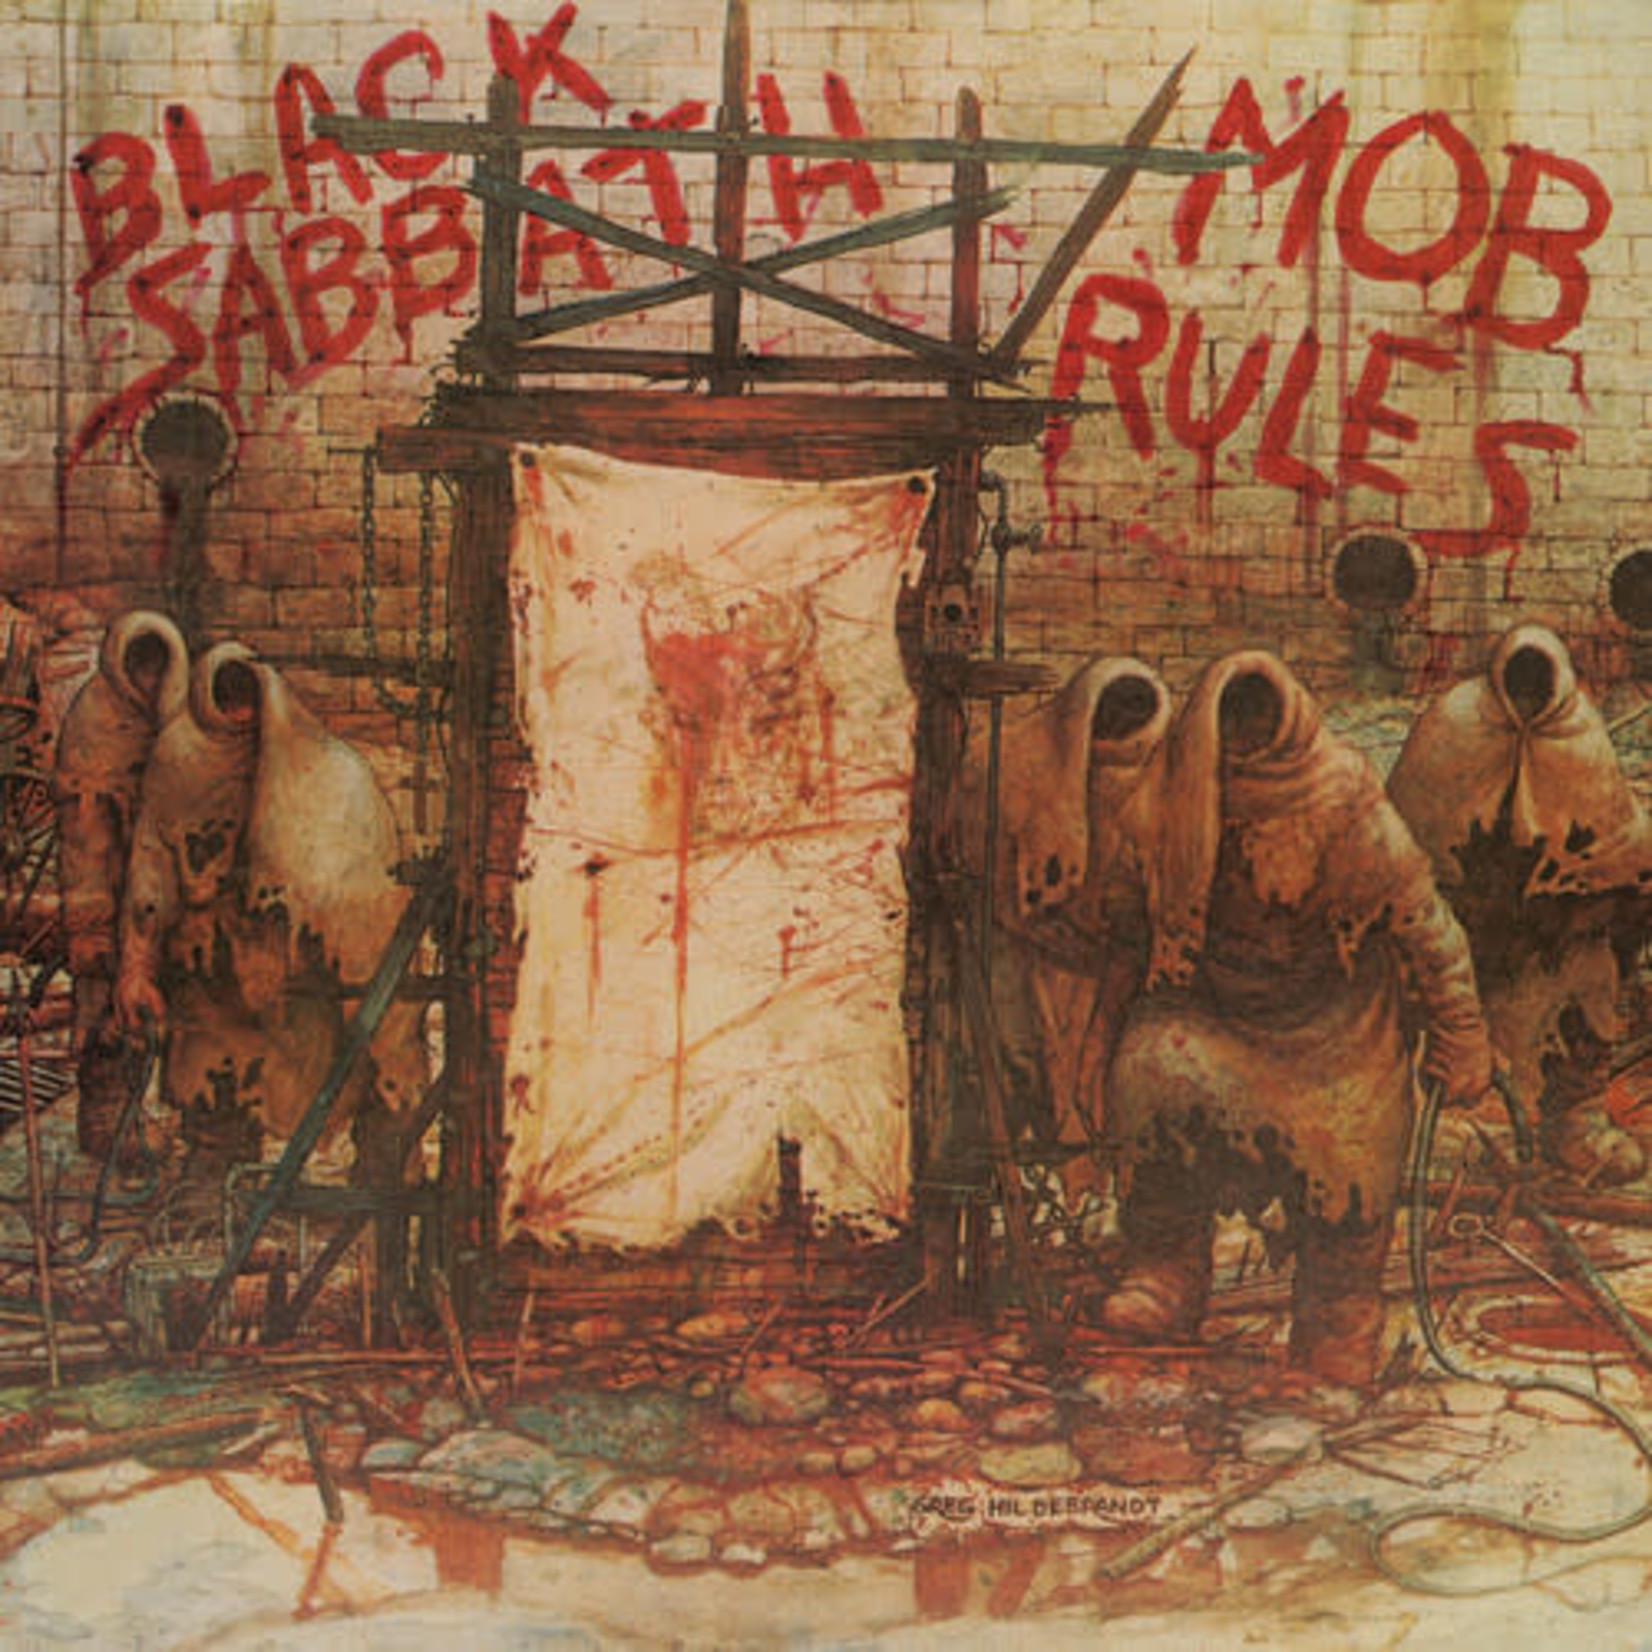 Rhino Black Sabbath - Mob Rules (2LP)